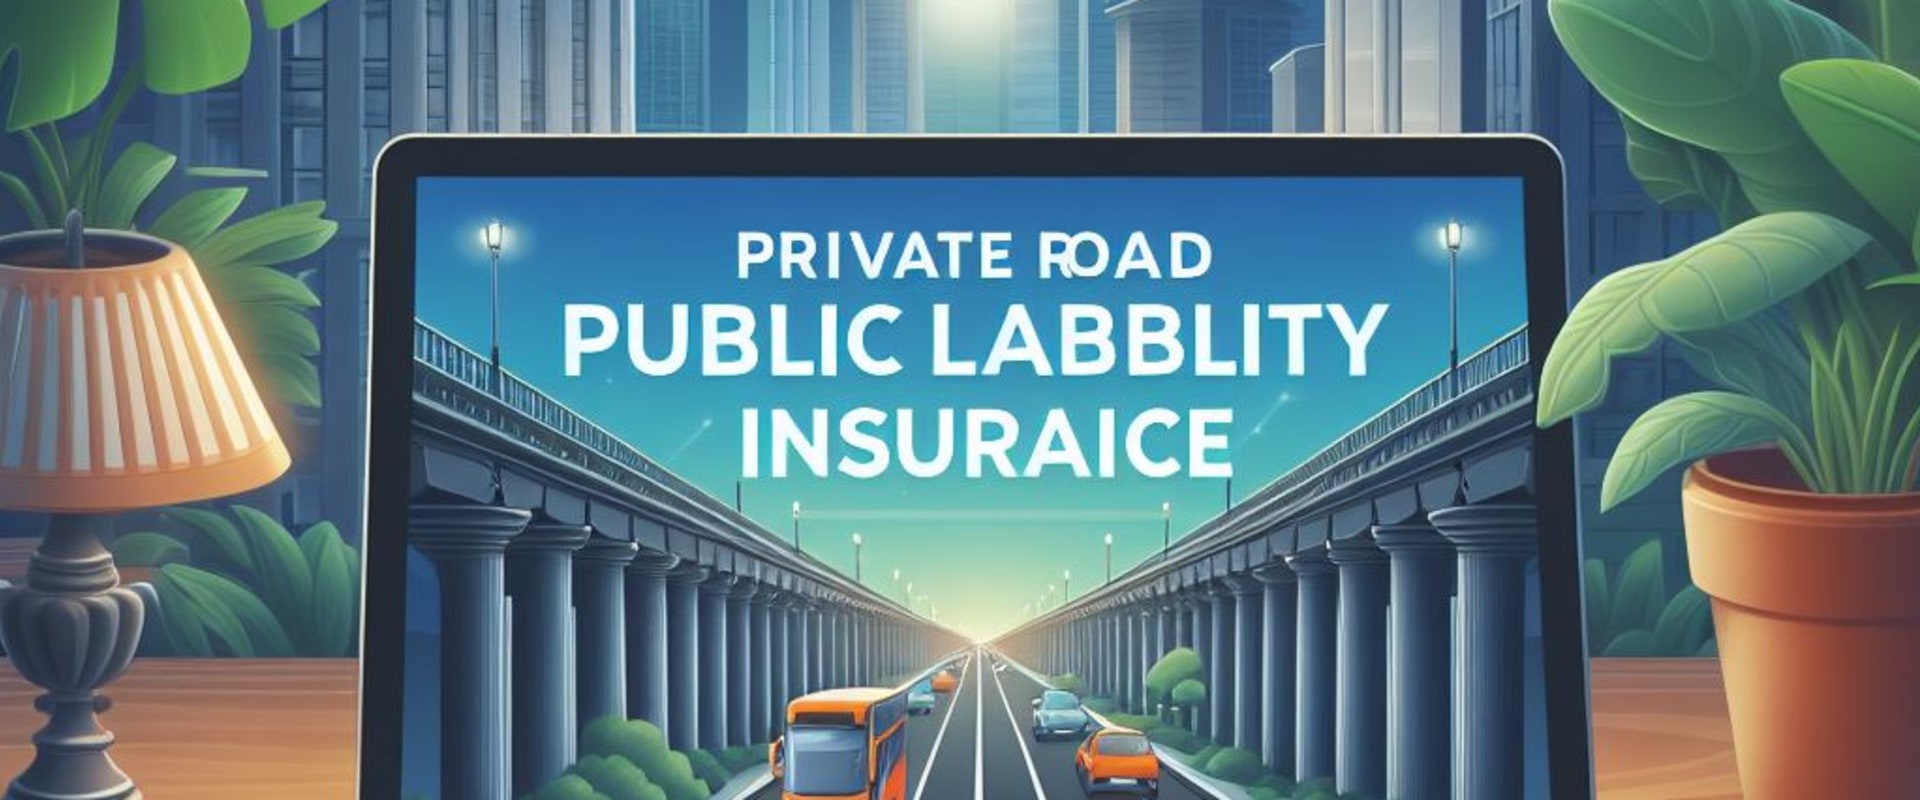 private road public liability insurance